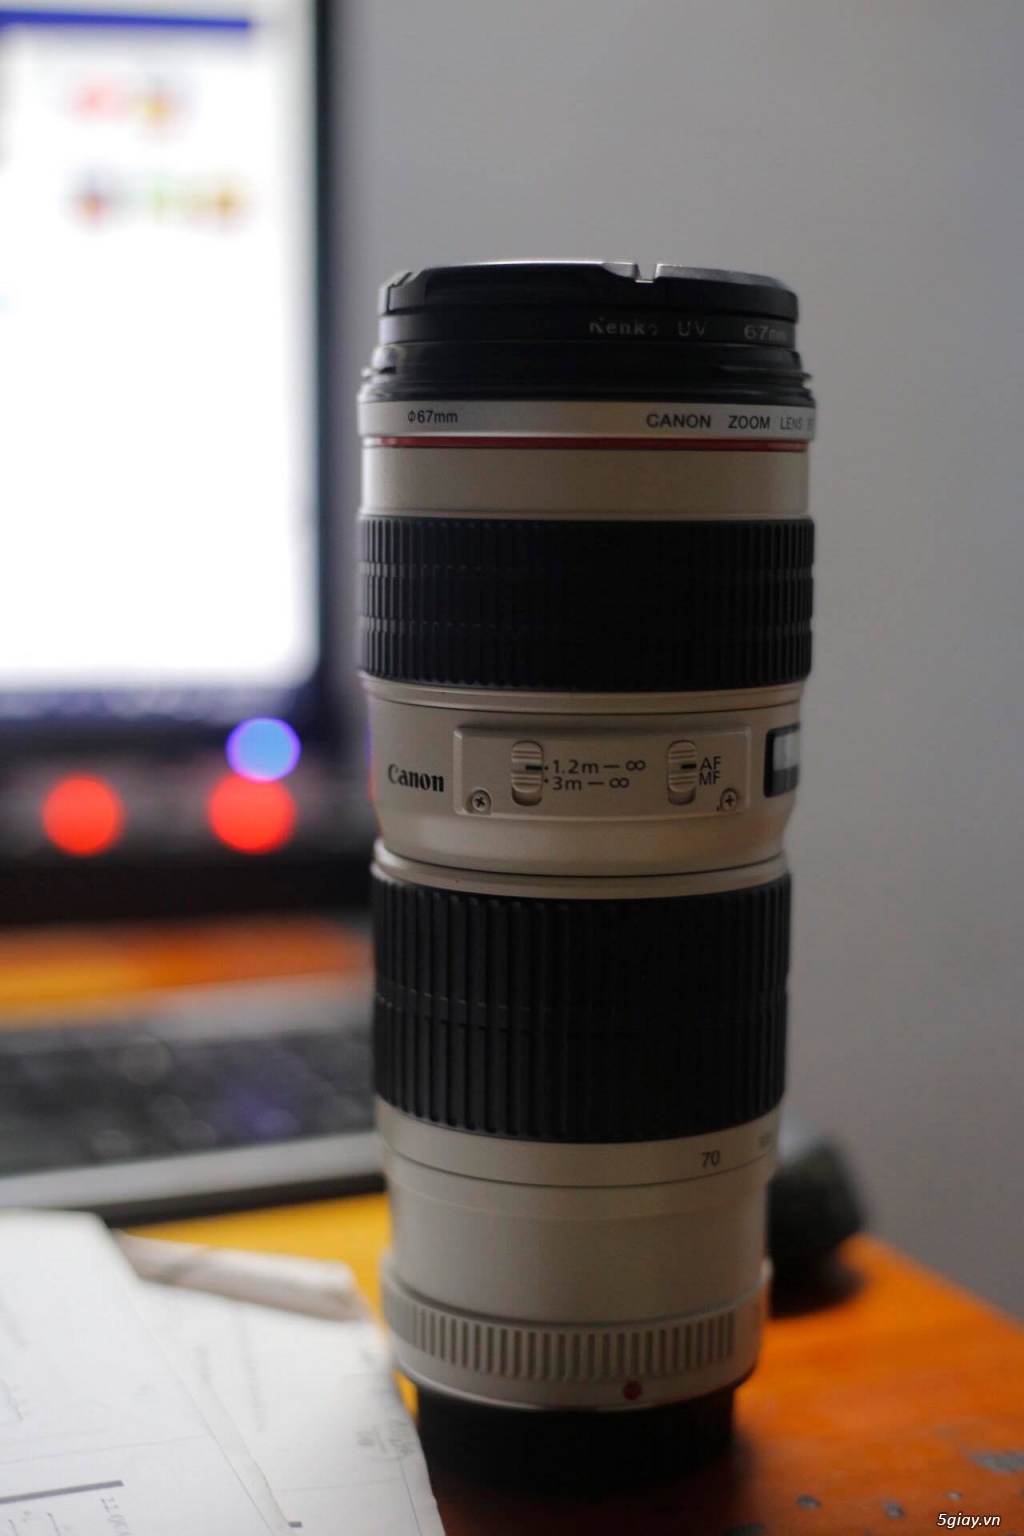 Cần bán: canon lens 70-200 F4L non IS code UB, giá mong muốn 8tr